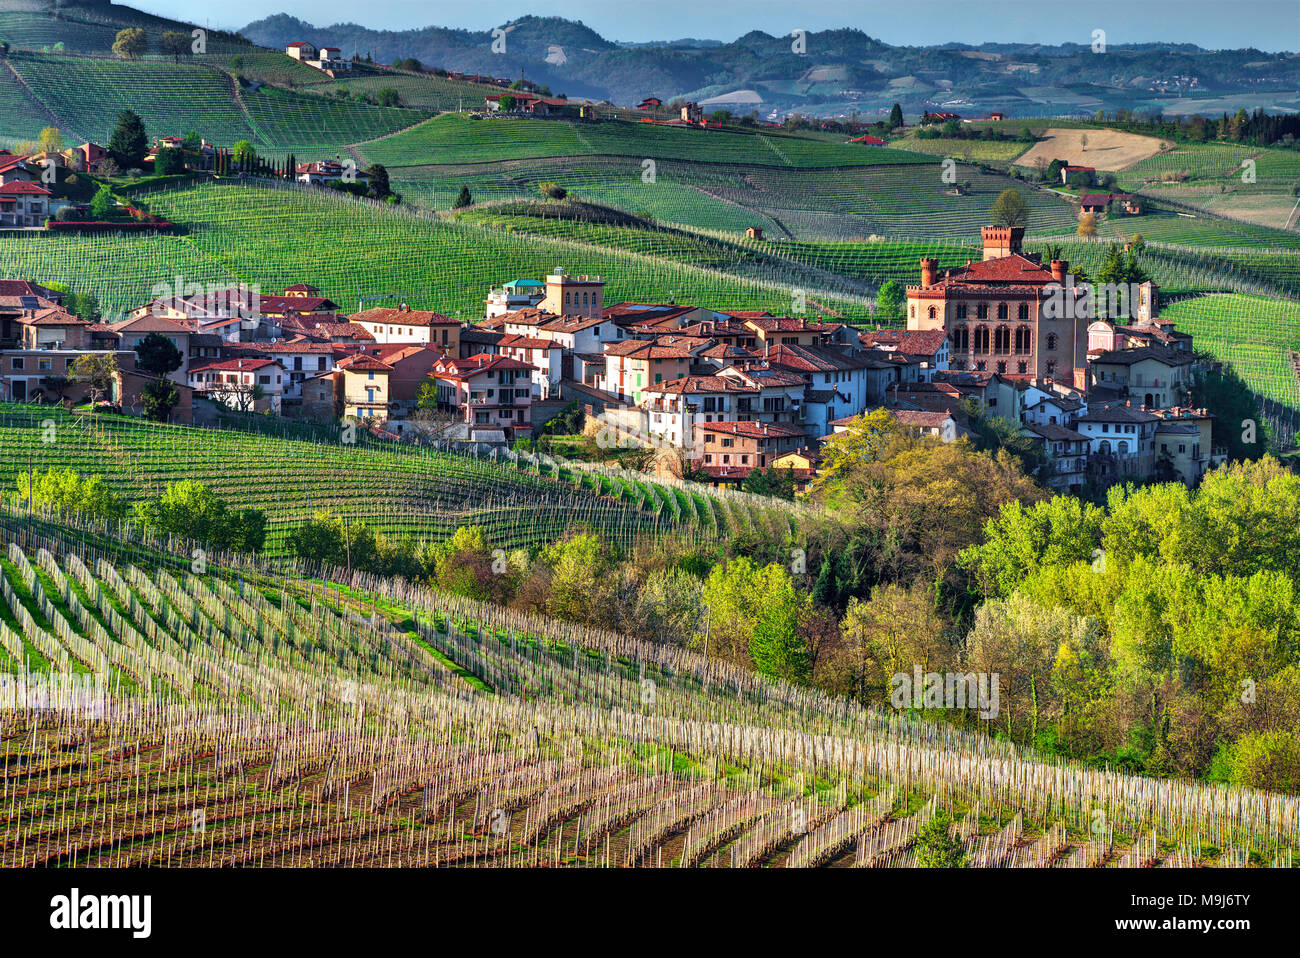 La città di Barolo con il castello Falletti, tra i vigneti, nel centro della zona dell'omonimo vino. Unesco - Sito Patrimonio dell'umanità. Foto Stock